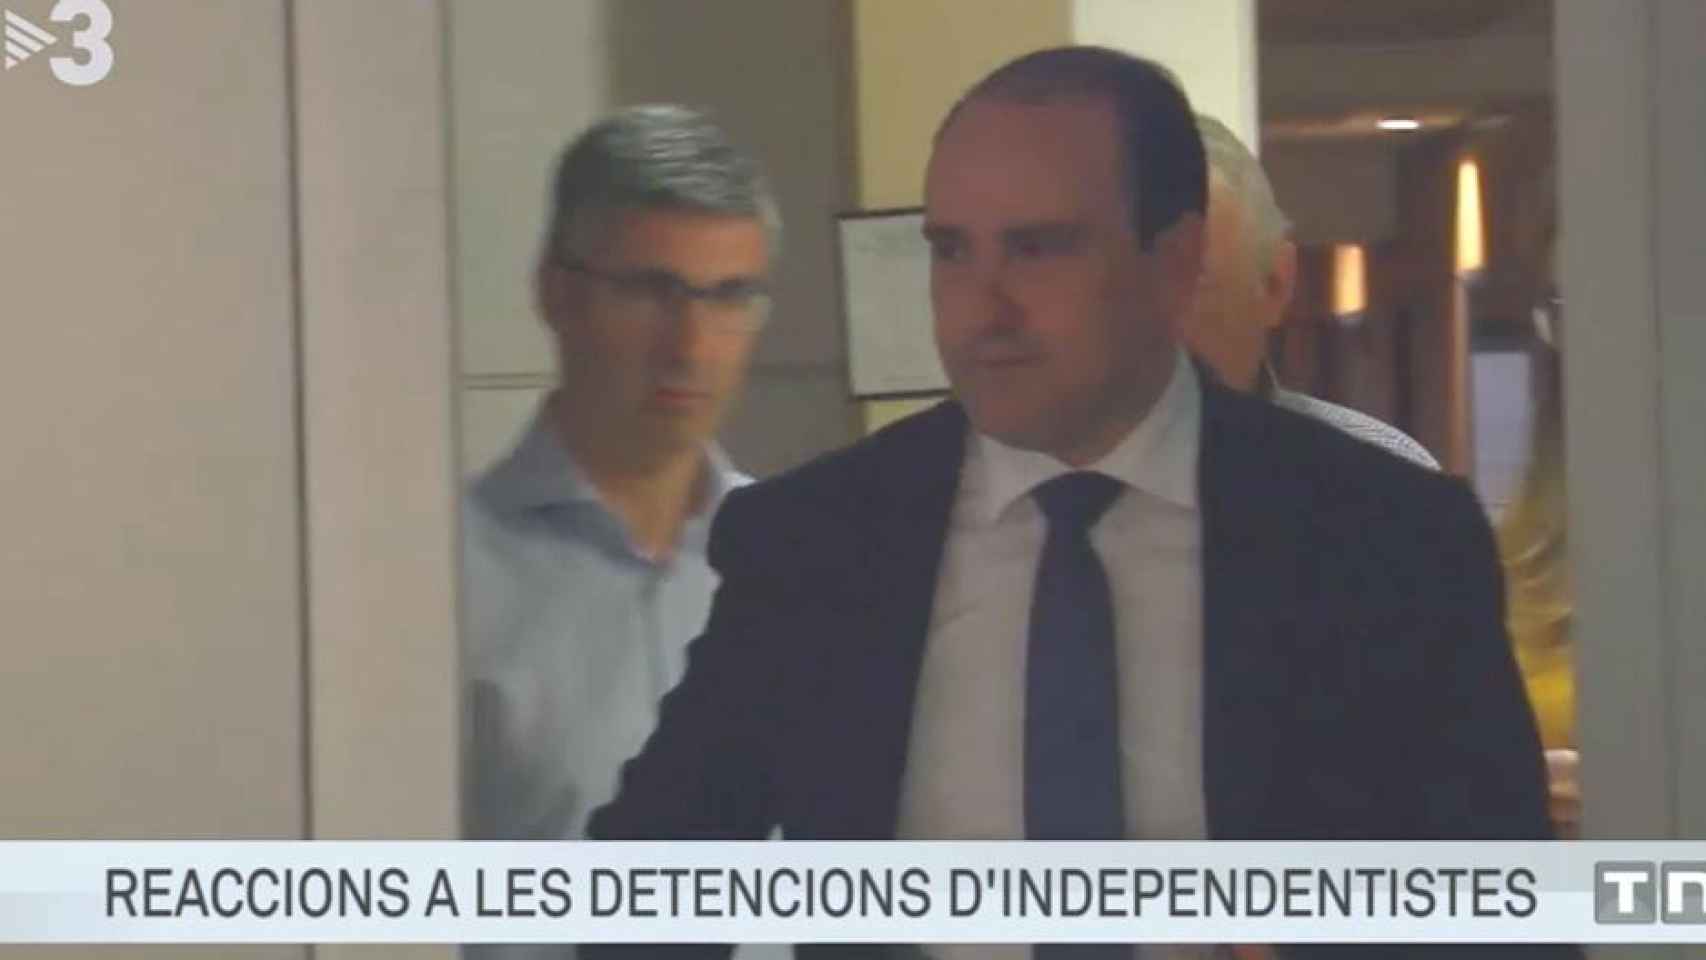 Rótulo de TV3 sobre las detenciones de independentistas, en lugar de explicar que son miembros de los CDR